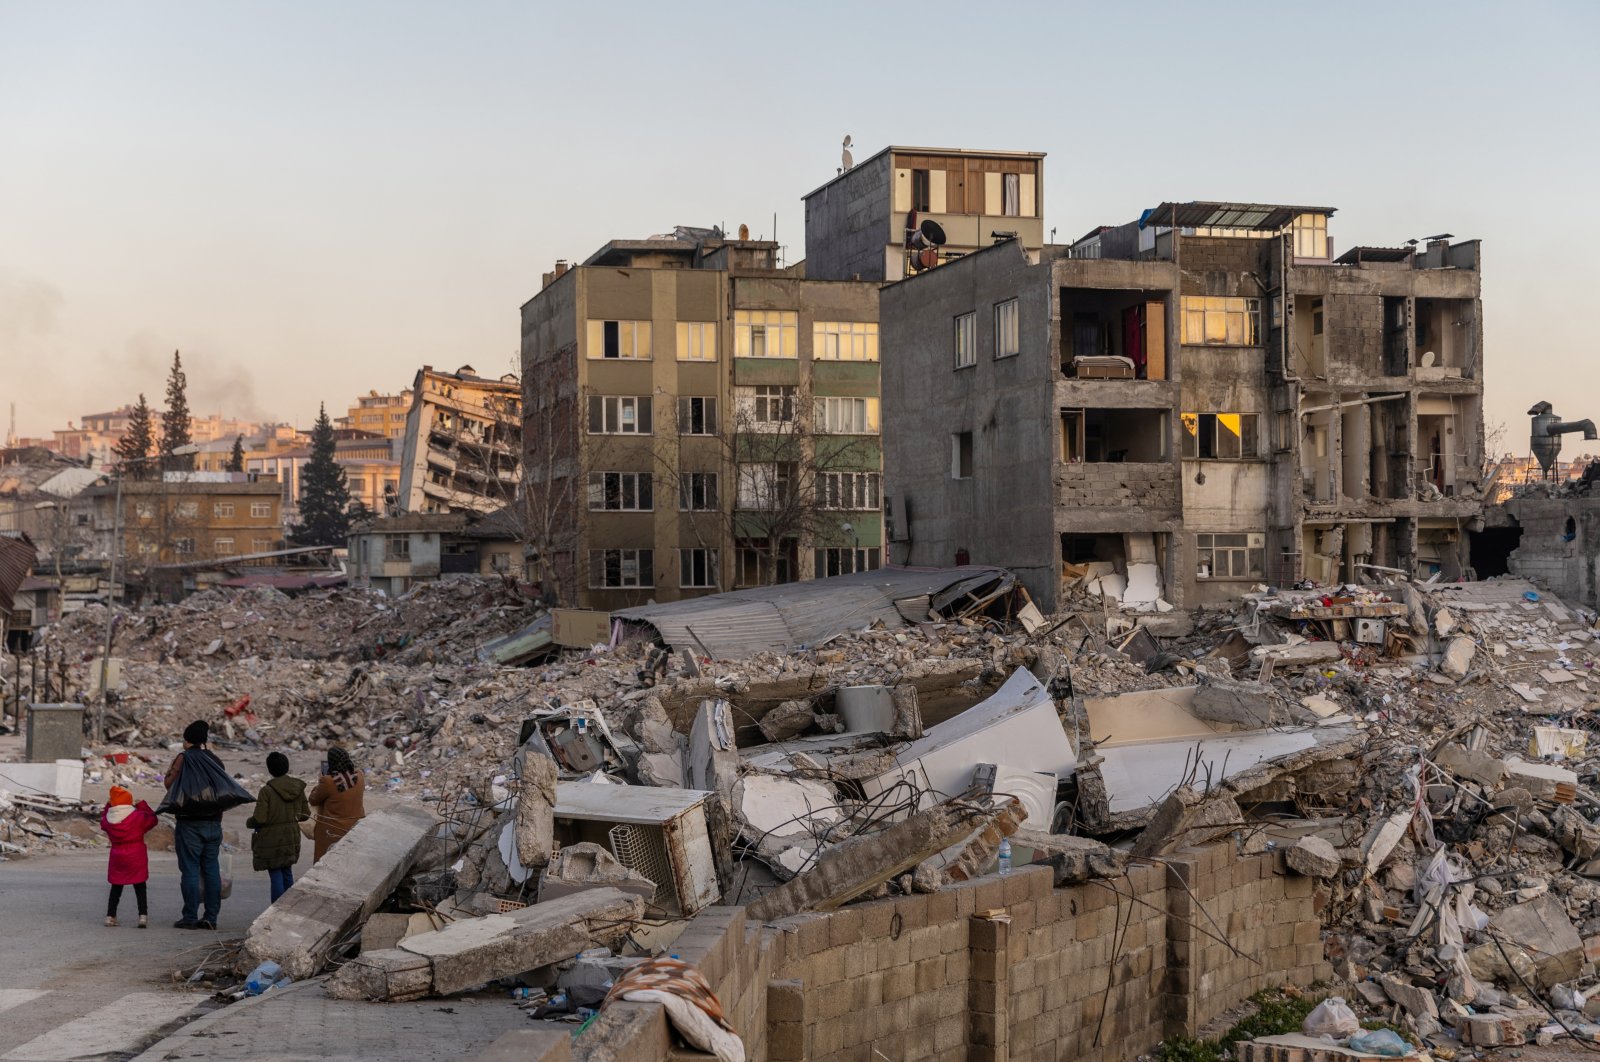 Gempa susulan berkekuatan tinggi dapat berlanjut di Türkiye selatan: Resmi